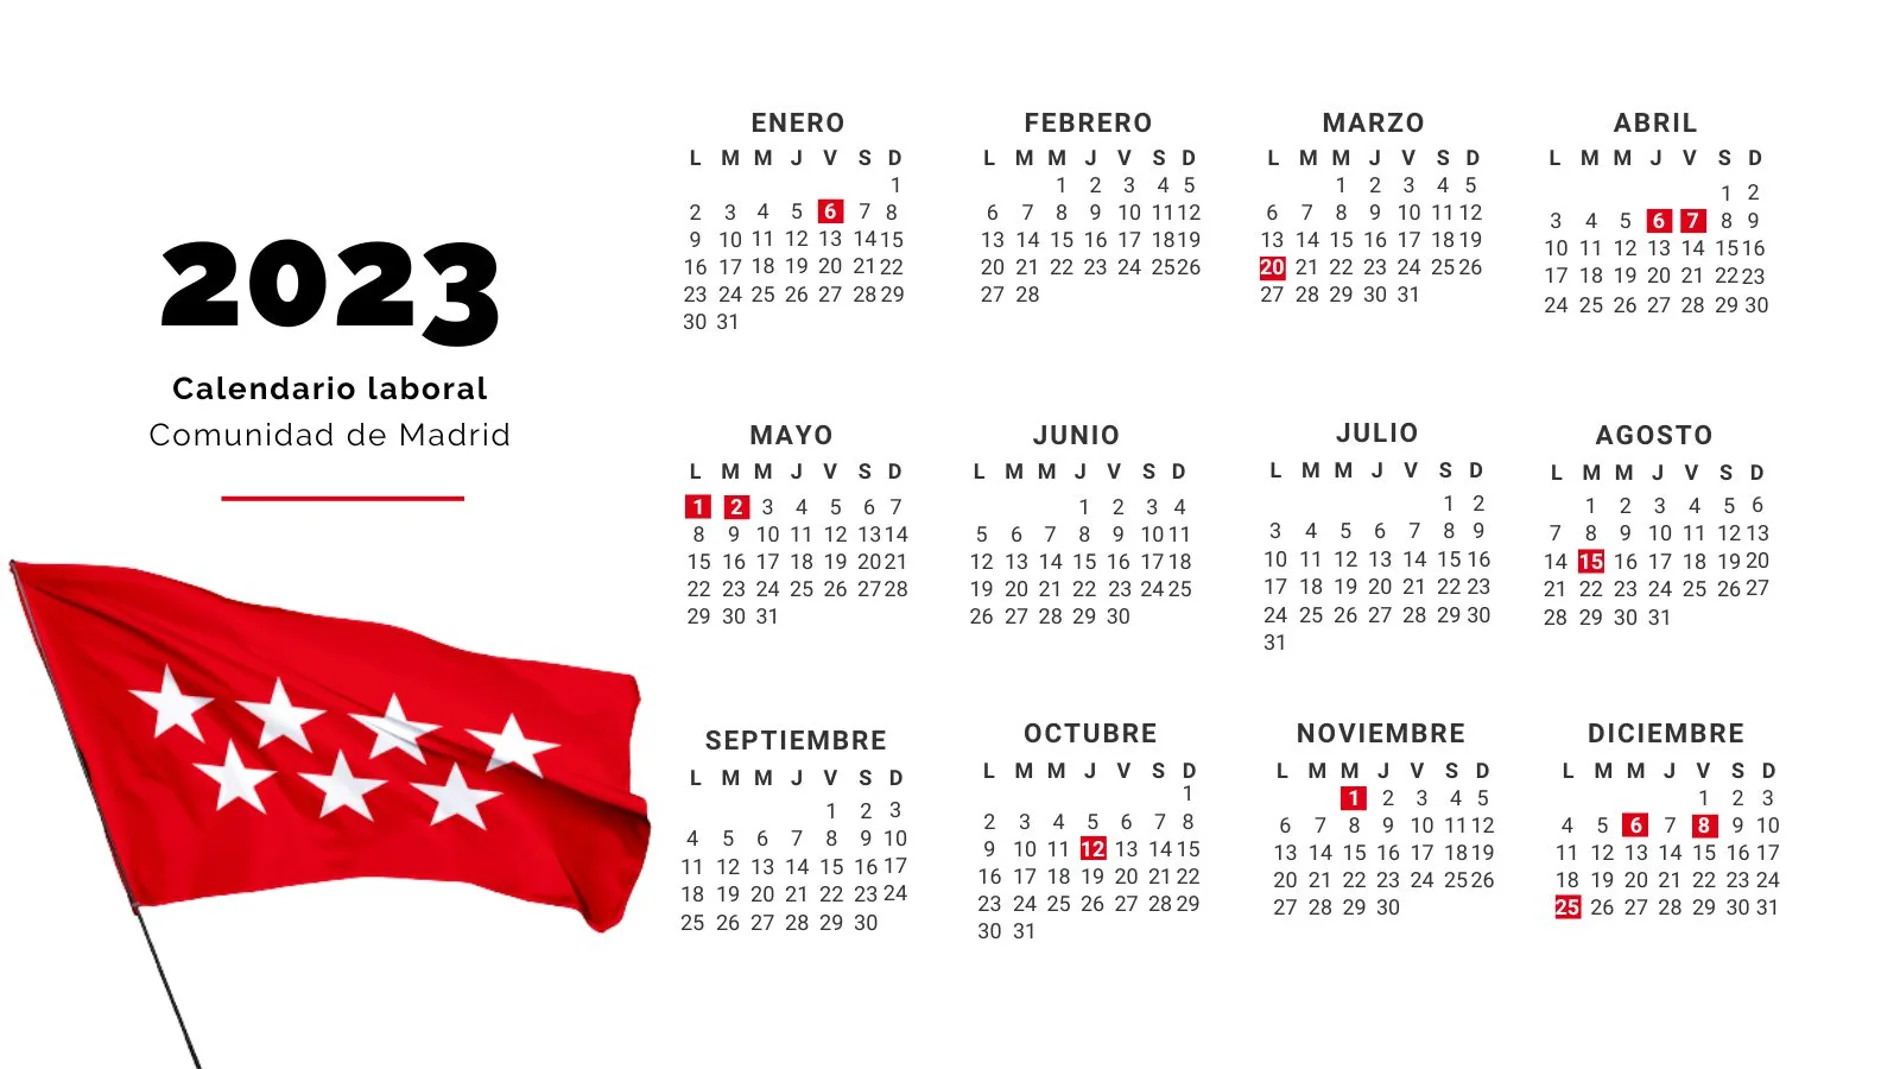 Calendario laboral de Madrid para 2023: todos los festivos y puentes de la comunidad